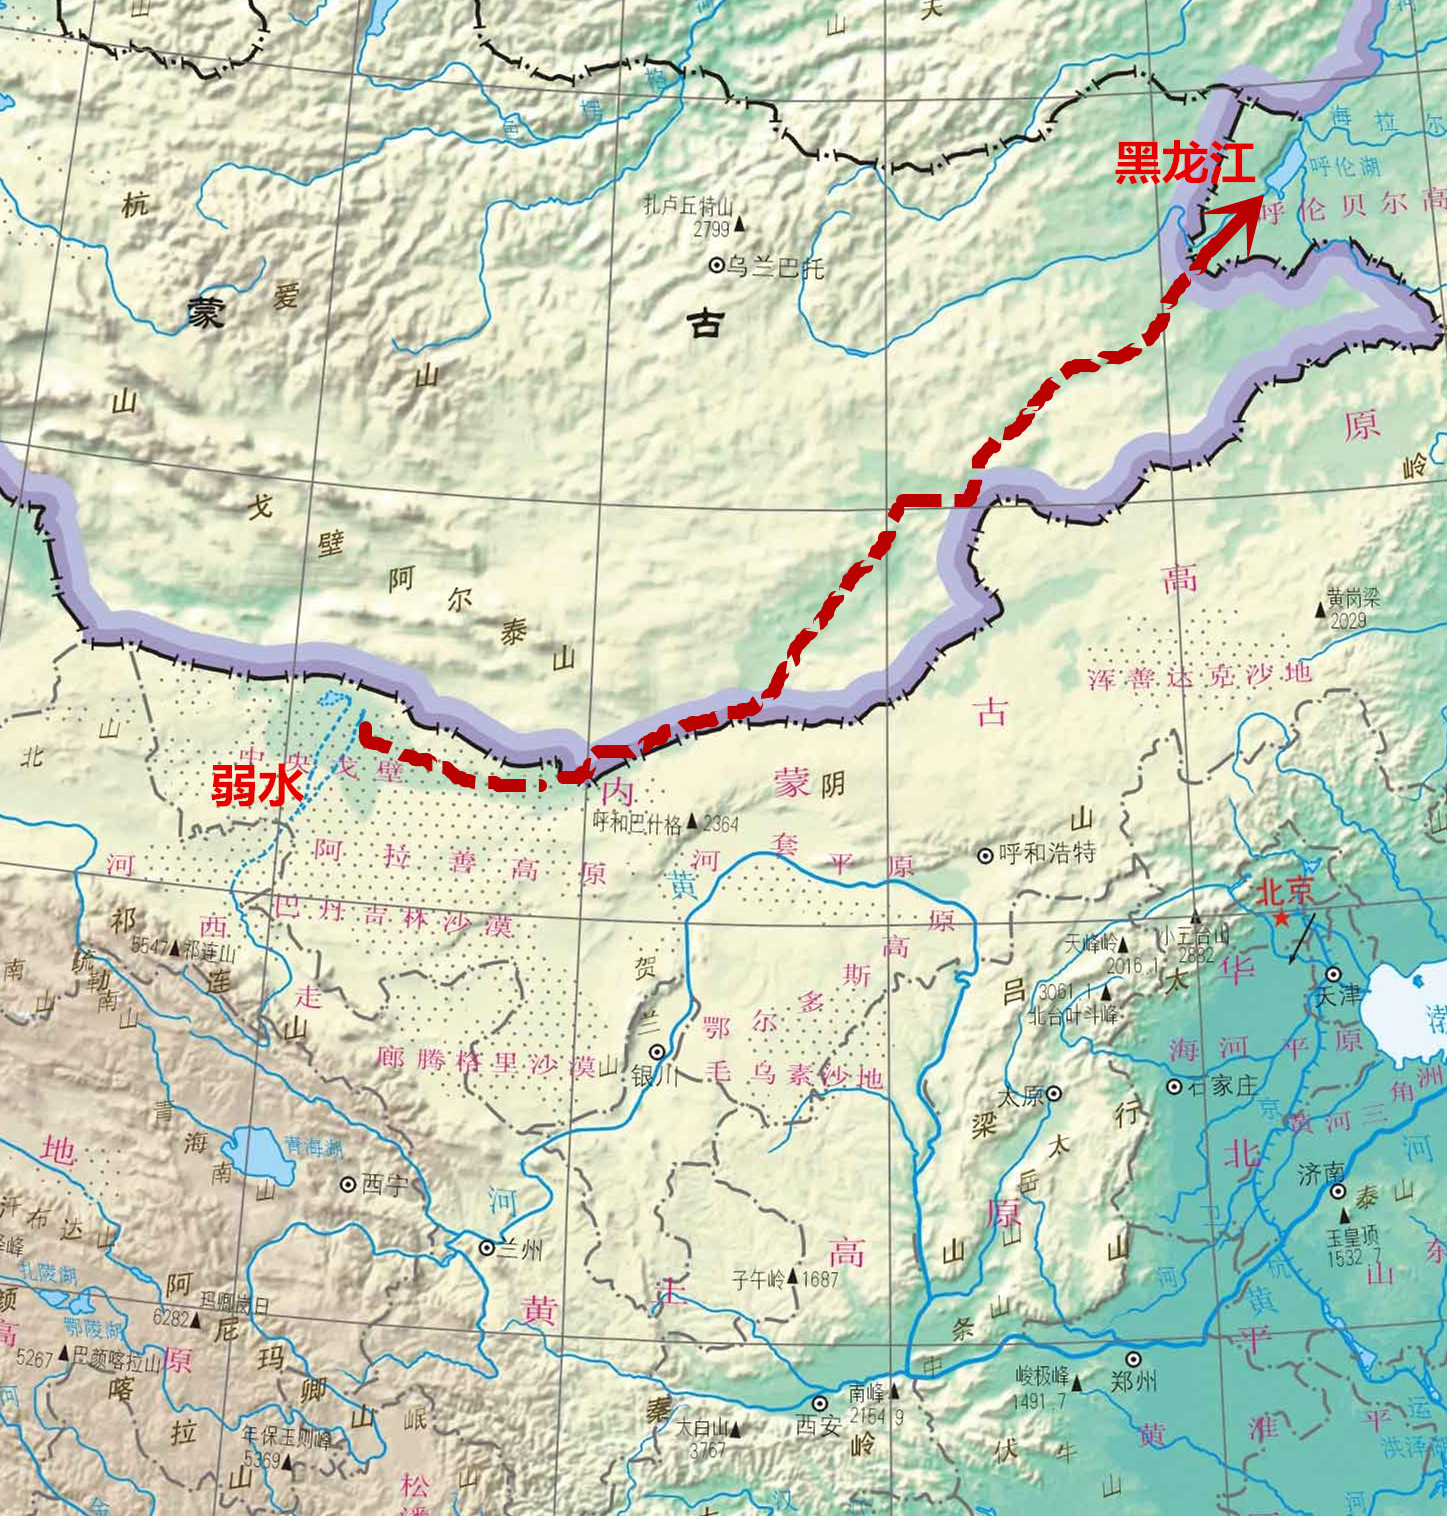 地理大发现:黑龙江曾经发源于祁连山,是中国最长的河流